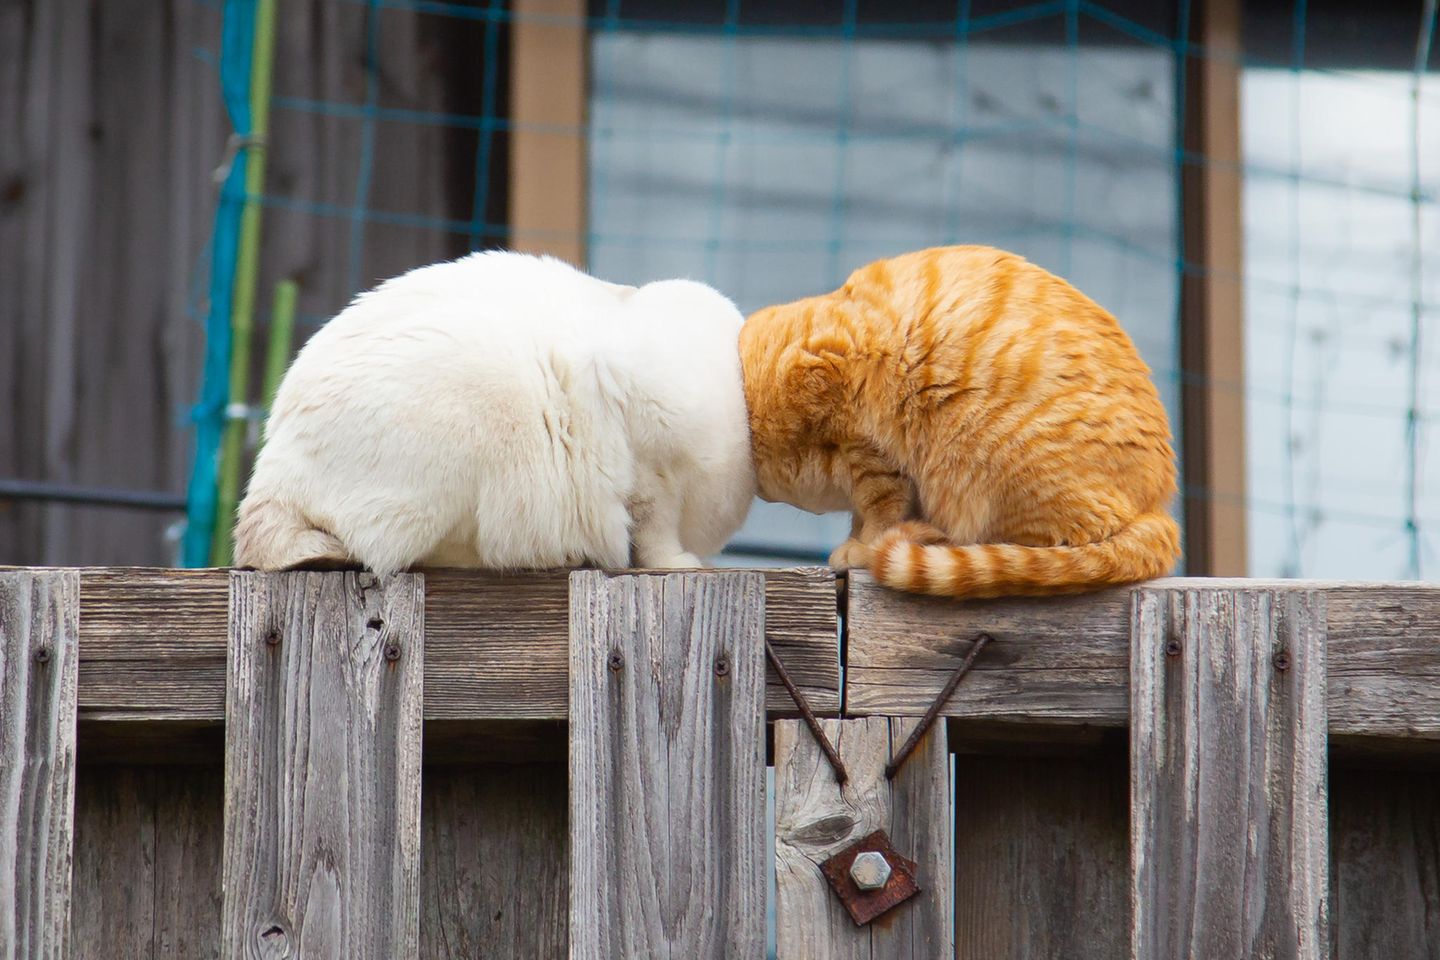 Diese beiden Katzen scheinen nicht nur sprichwörtlich die Köpfe zusammenzustecken. Der Fotograf Kenichi Morinaga fühlte sich bei dem Anblick der beiden eher an einen Cartoon-Kampf erinnert.